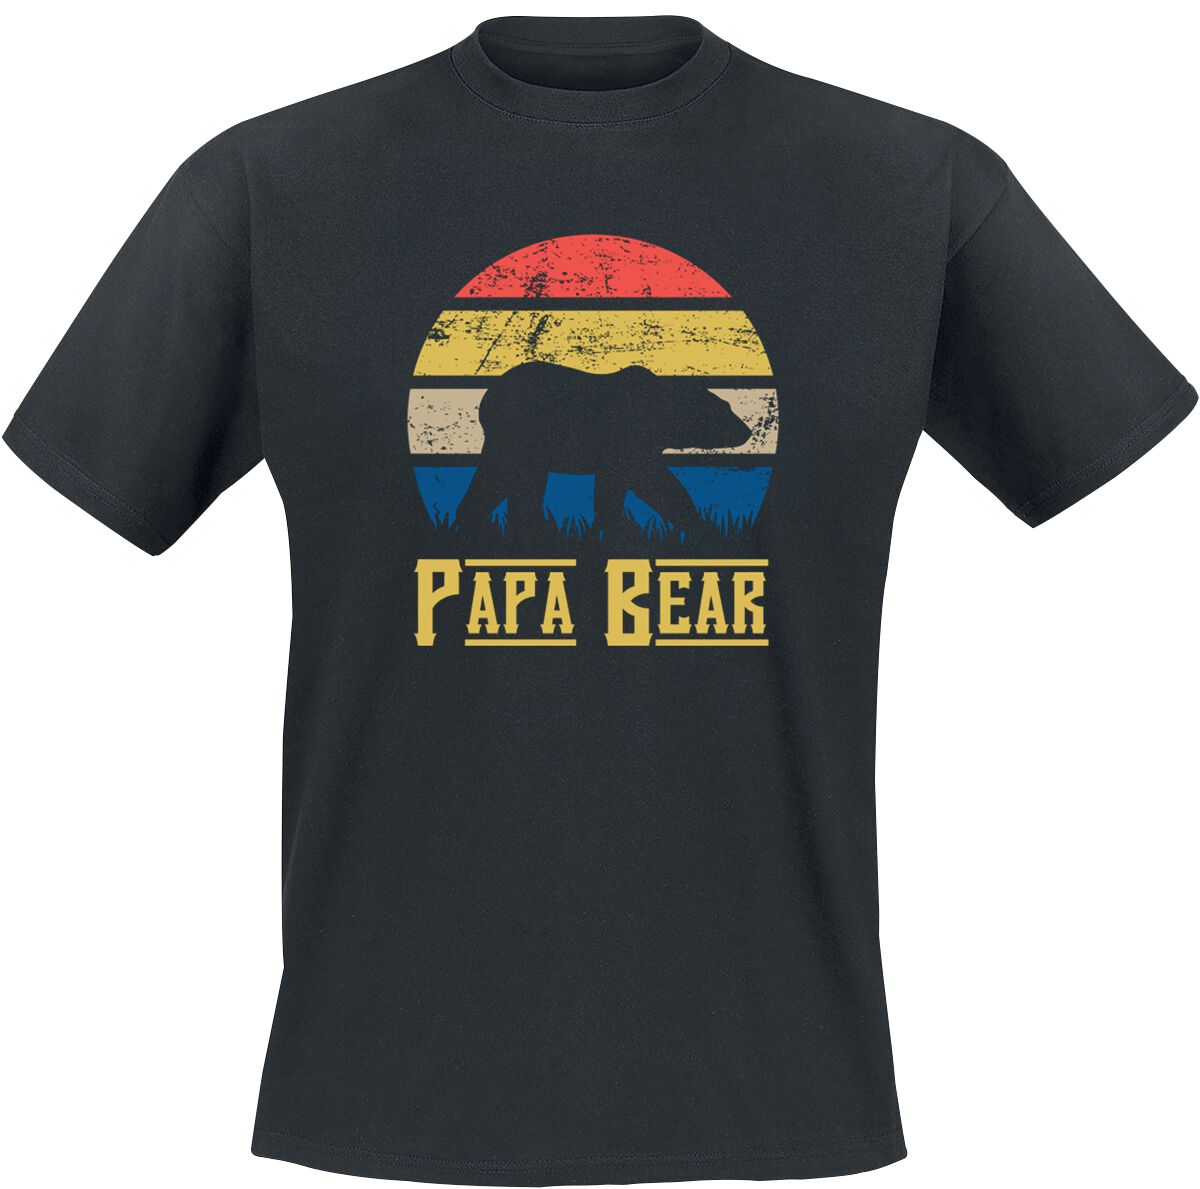 Familie & Freunde T-Shirt - Papa Bear - S bis 5XL - für Männer - Größe L - schwarz